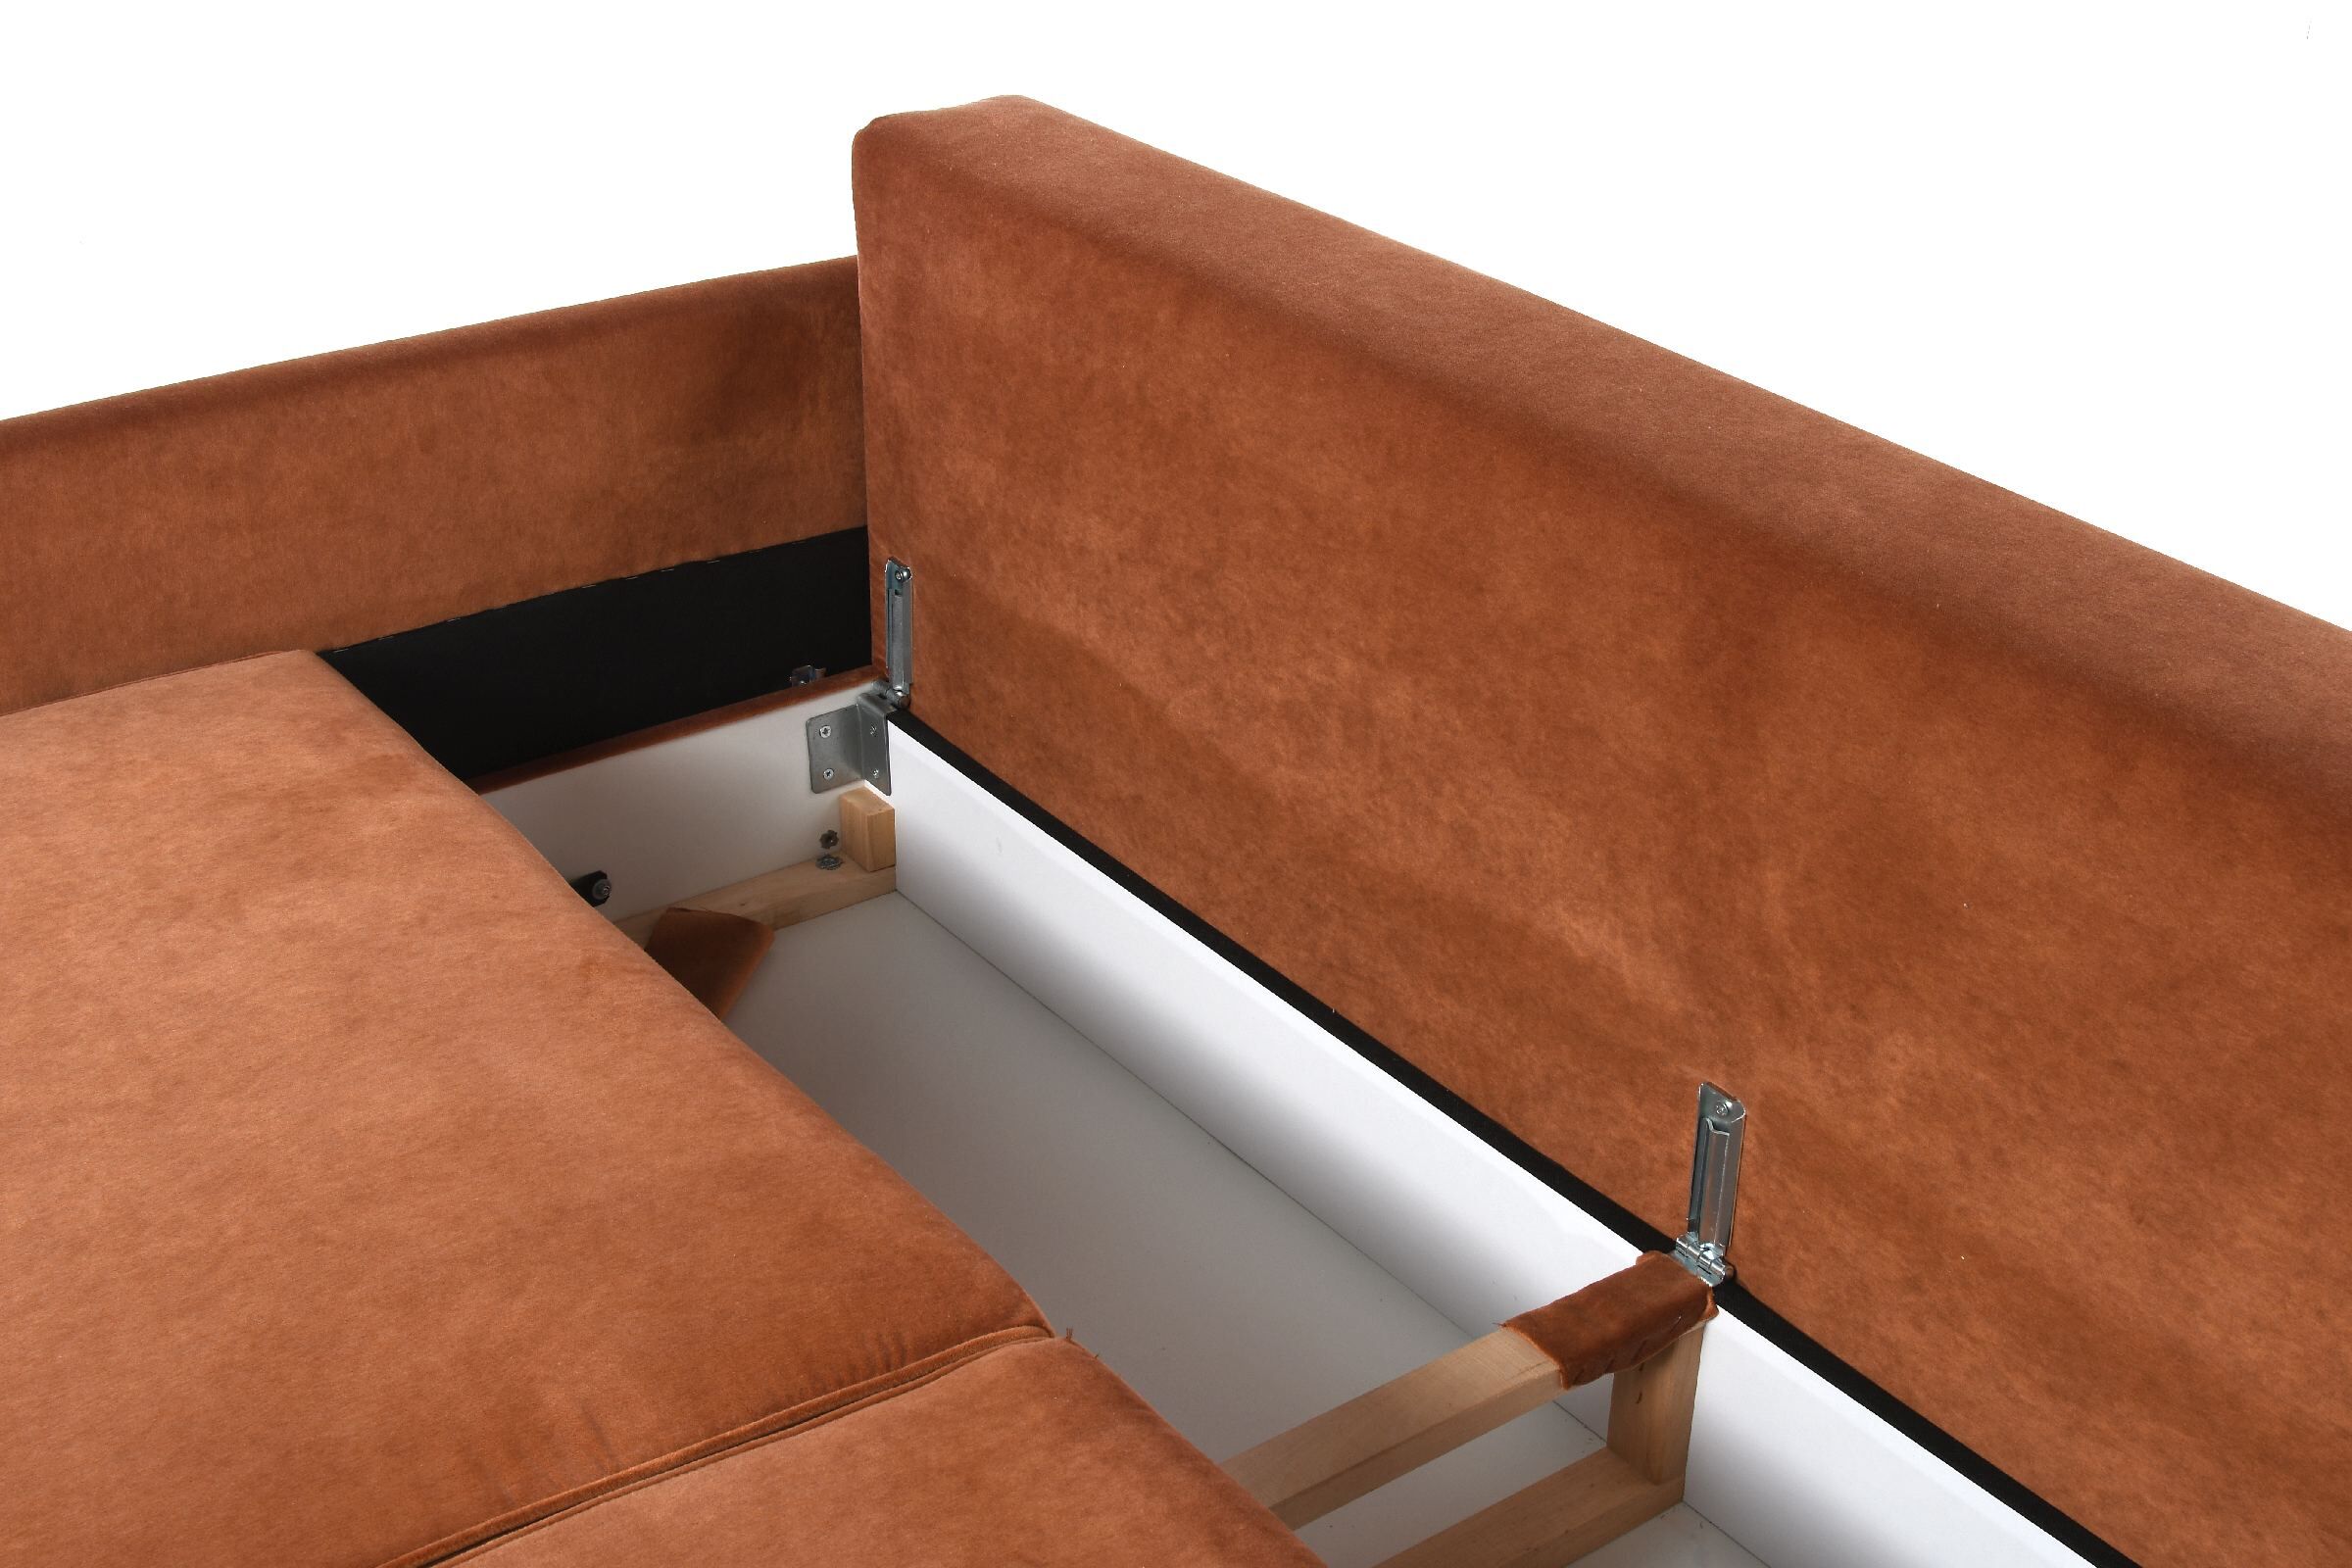 Sofa Derry z funkcją spania 212x96x87 cm